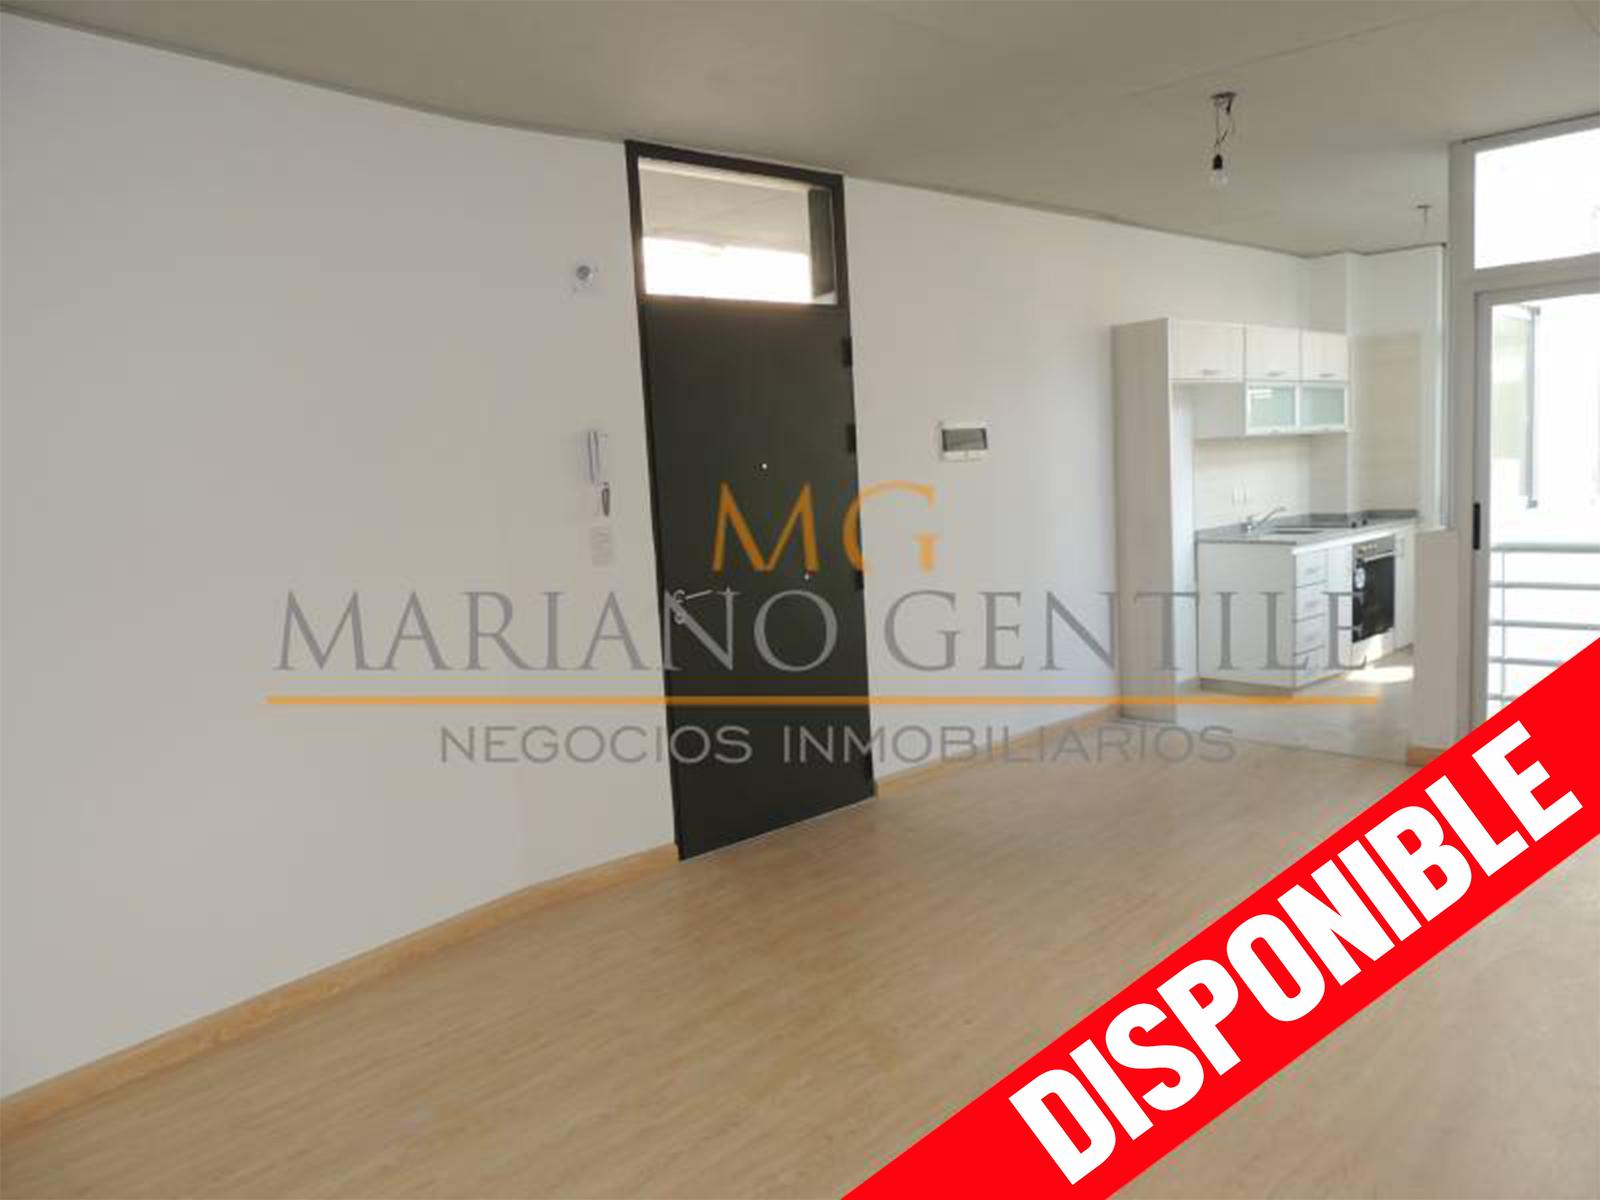 #5173001 | Rental | Apartment | Almagro (MARIANO GENTILE | Negocios Inmobiliarios)